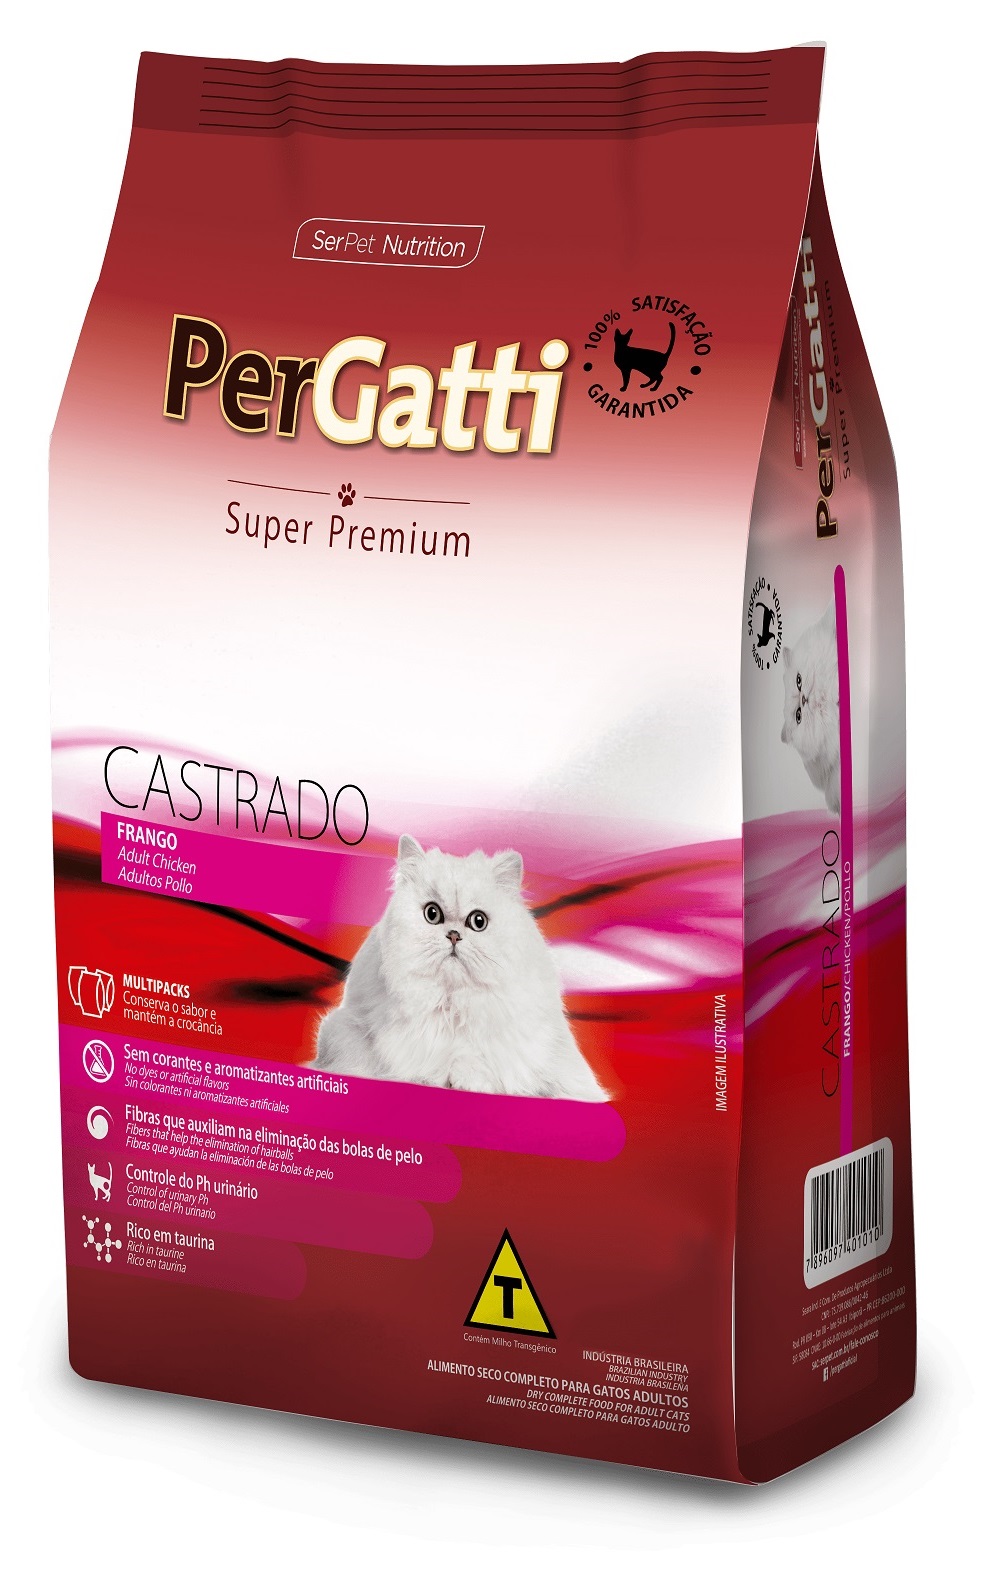 Ração Pergatti Super Premium Castrado Frango